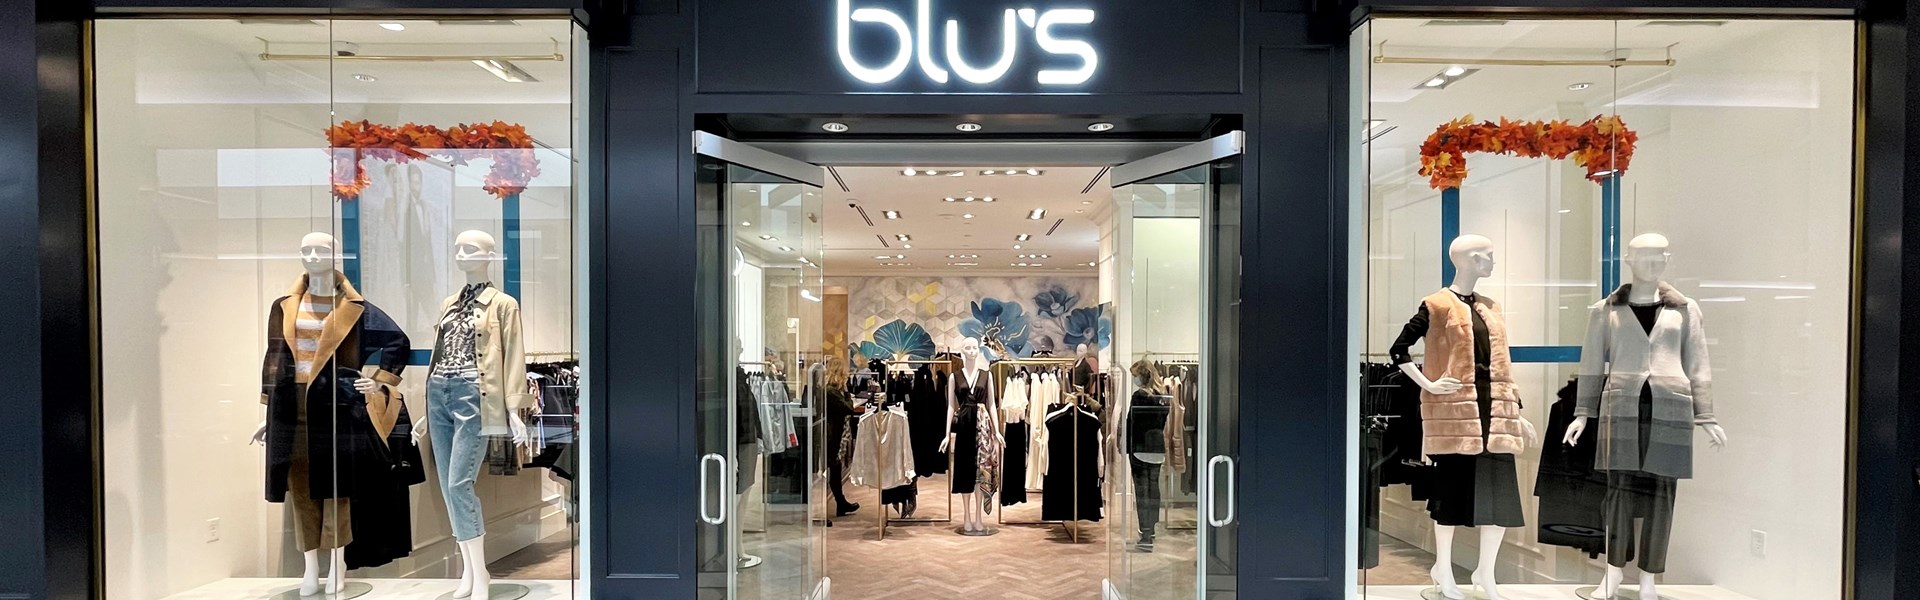 Blu's